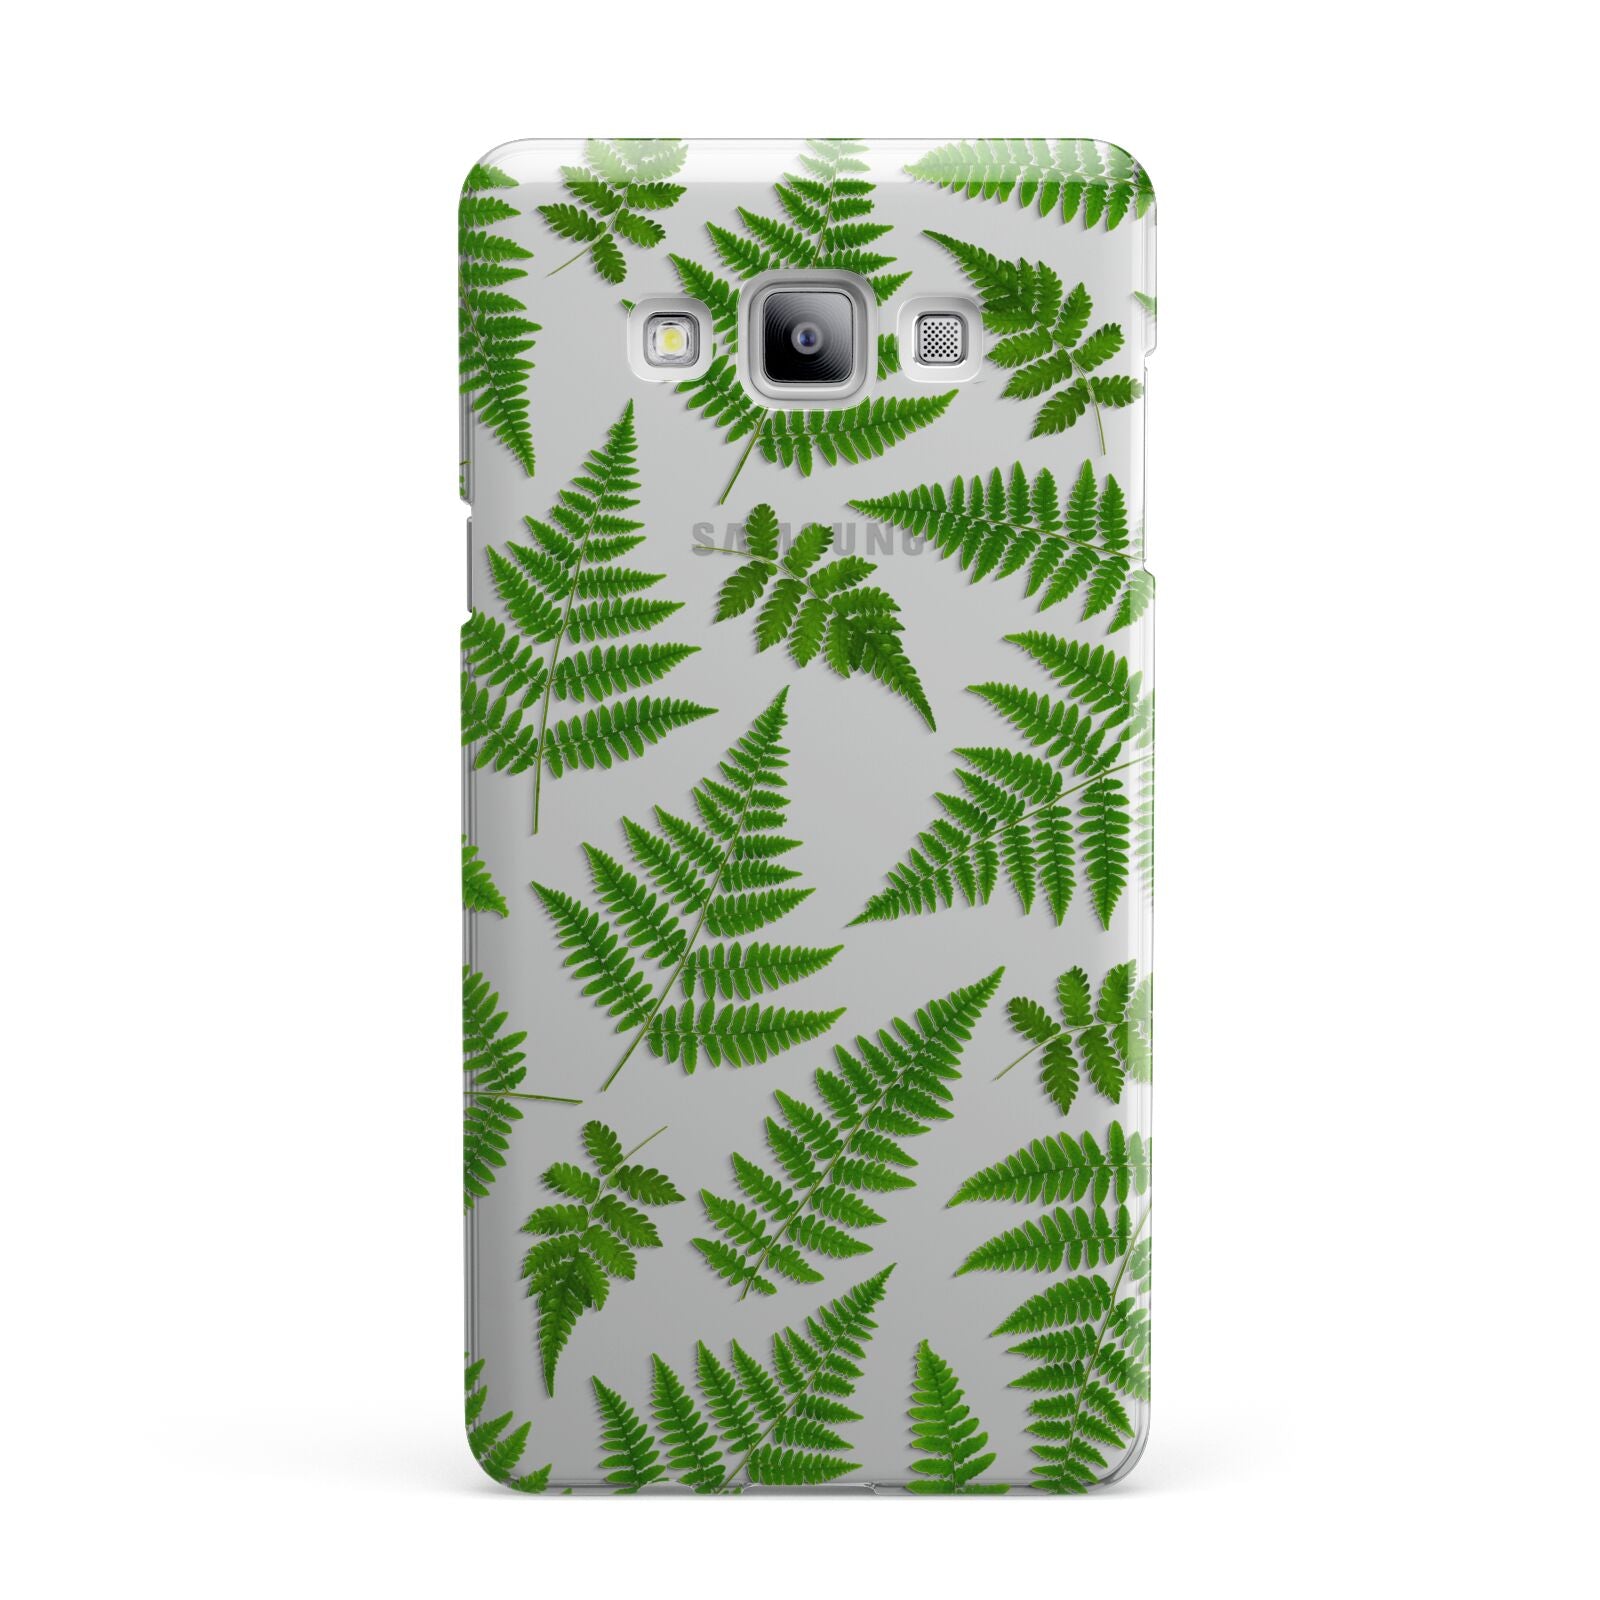 Fern Leaf Samsung Galaxy A7 2015 Case